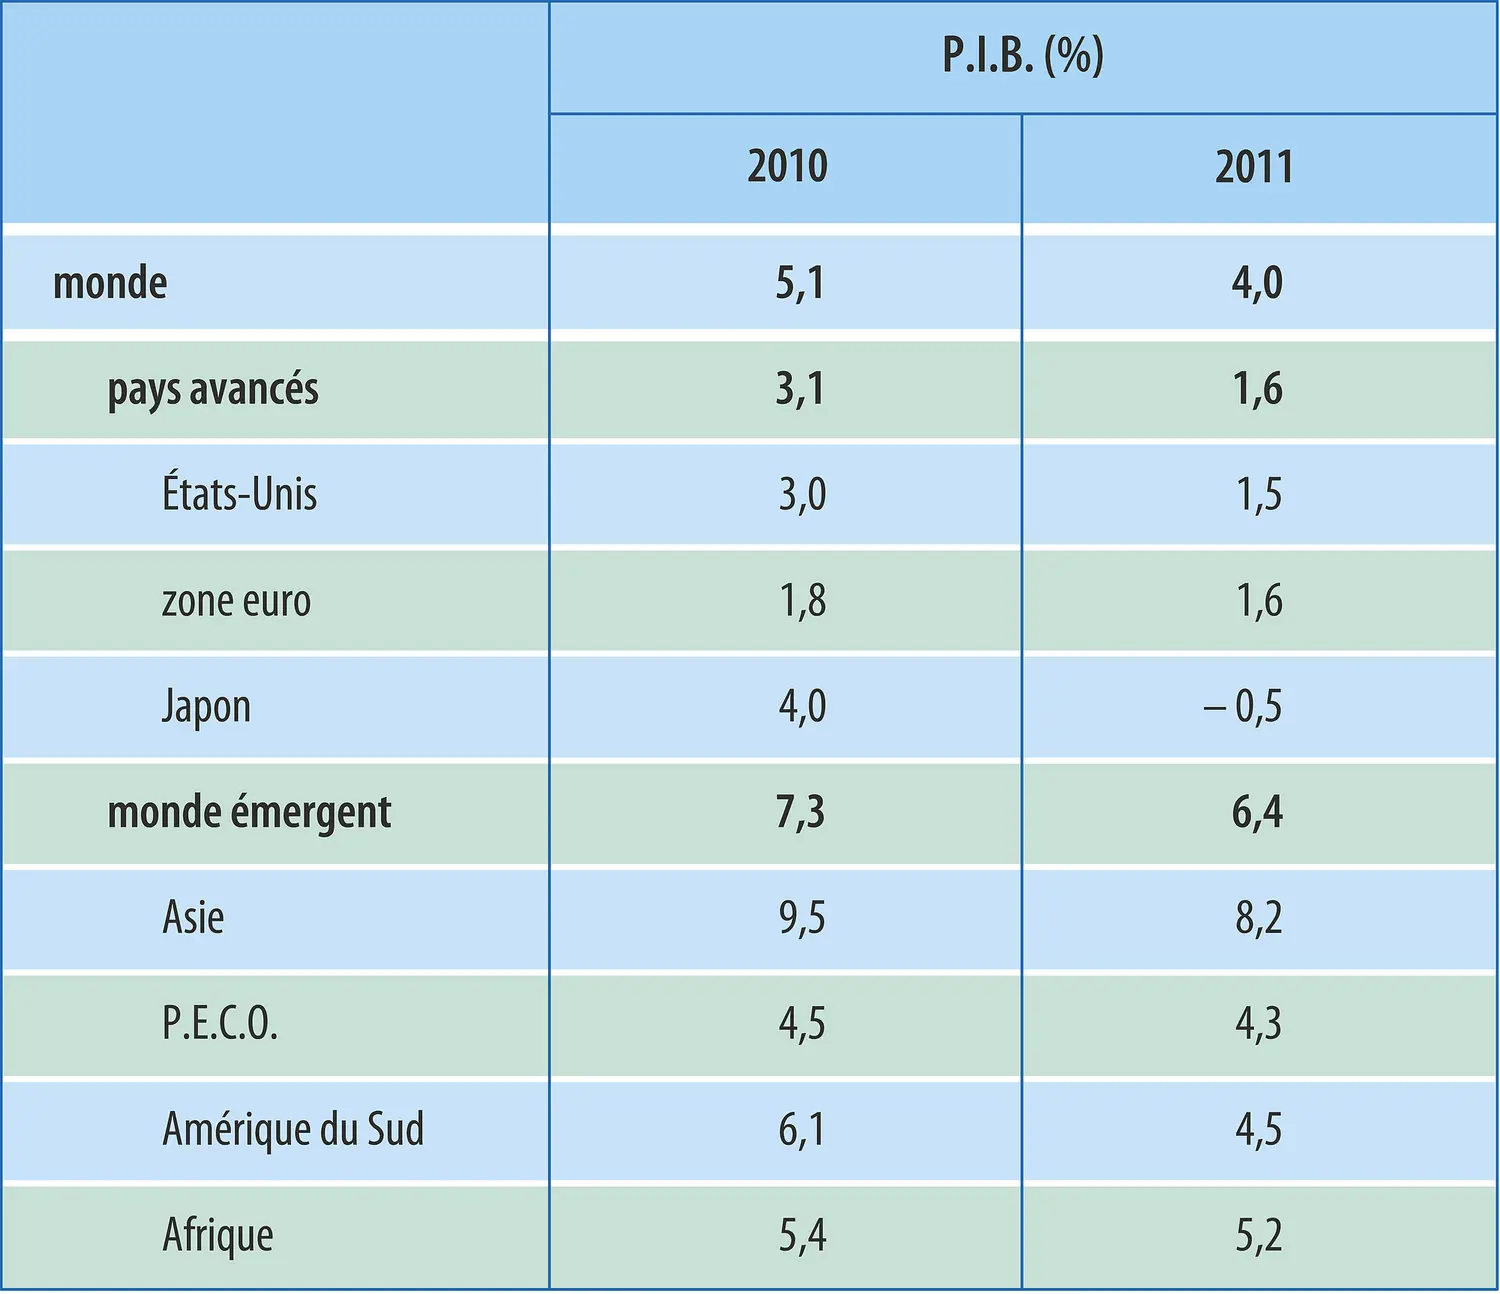 Économie mondiale (2011) : croissance annuelle du P.I.B.